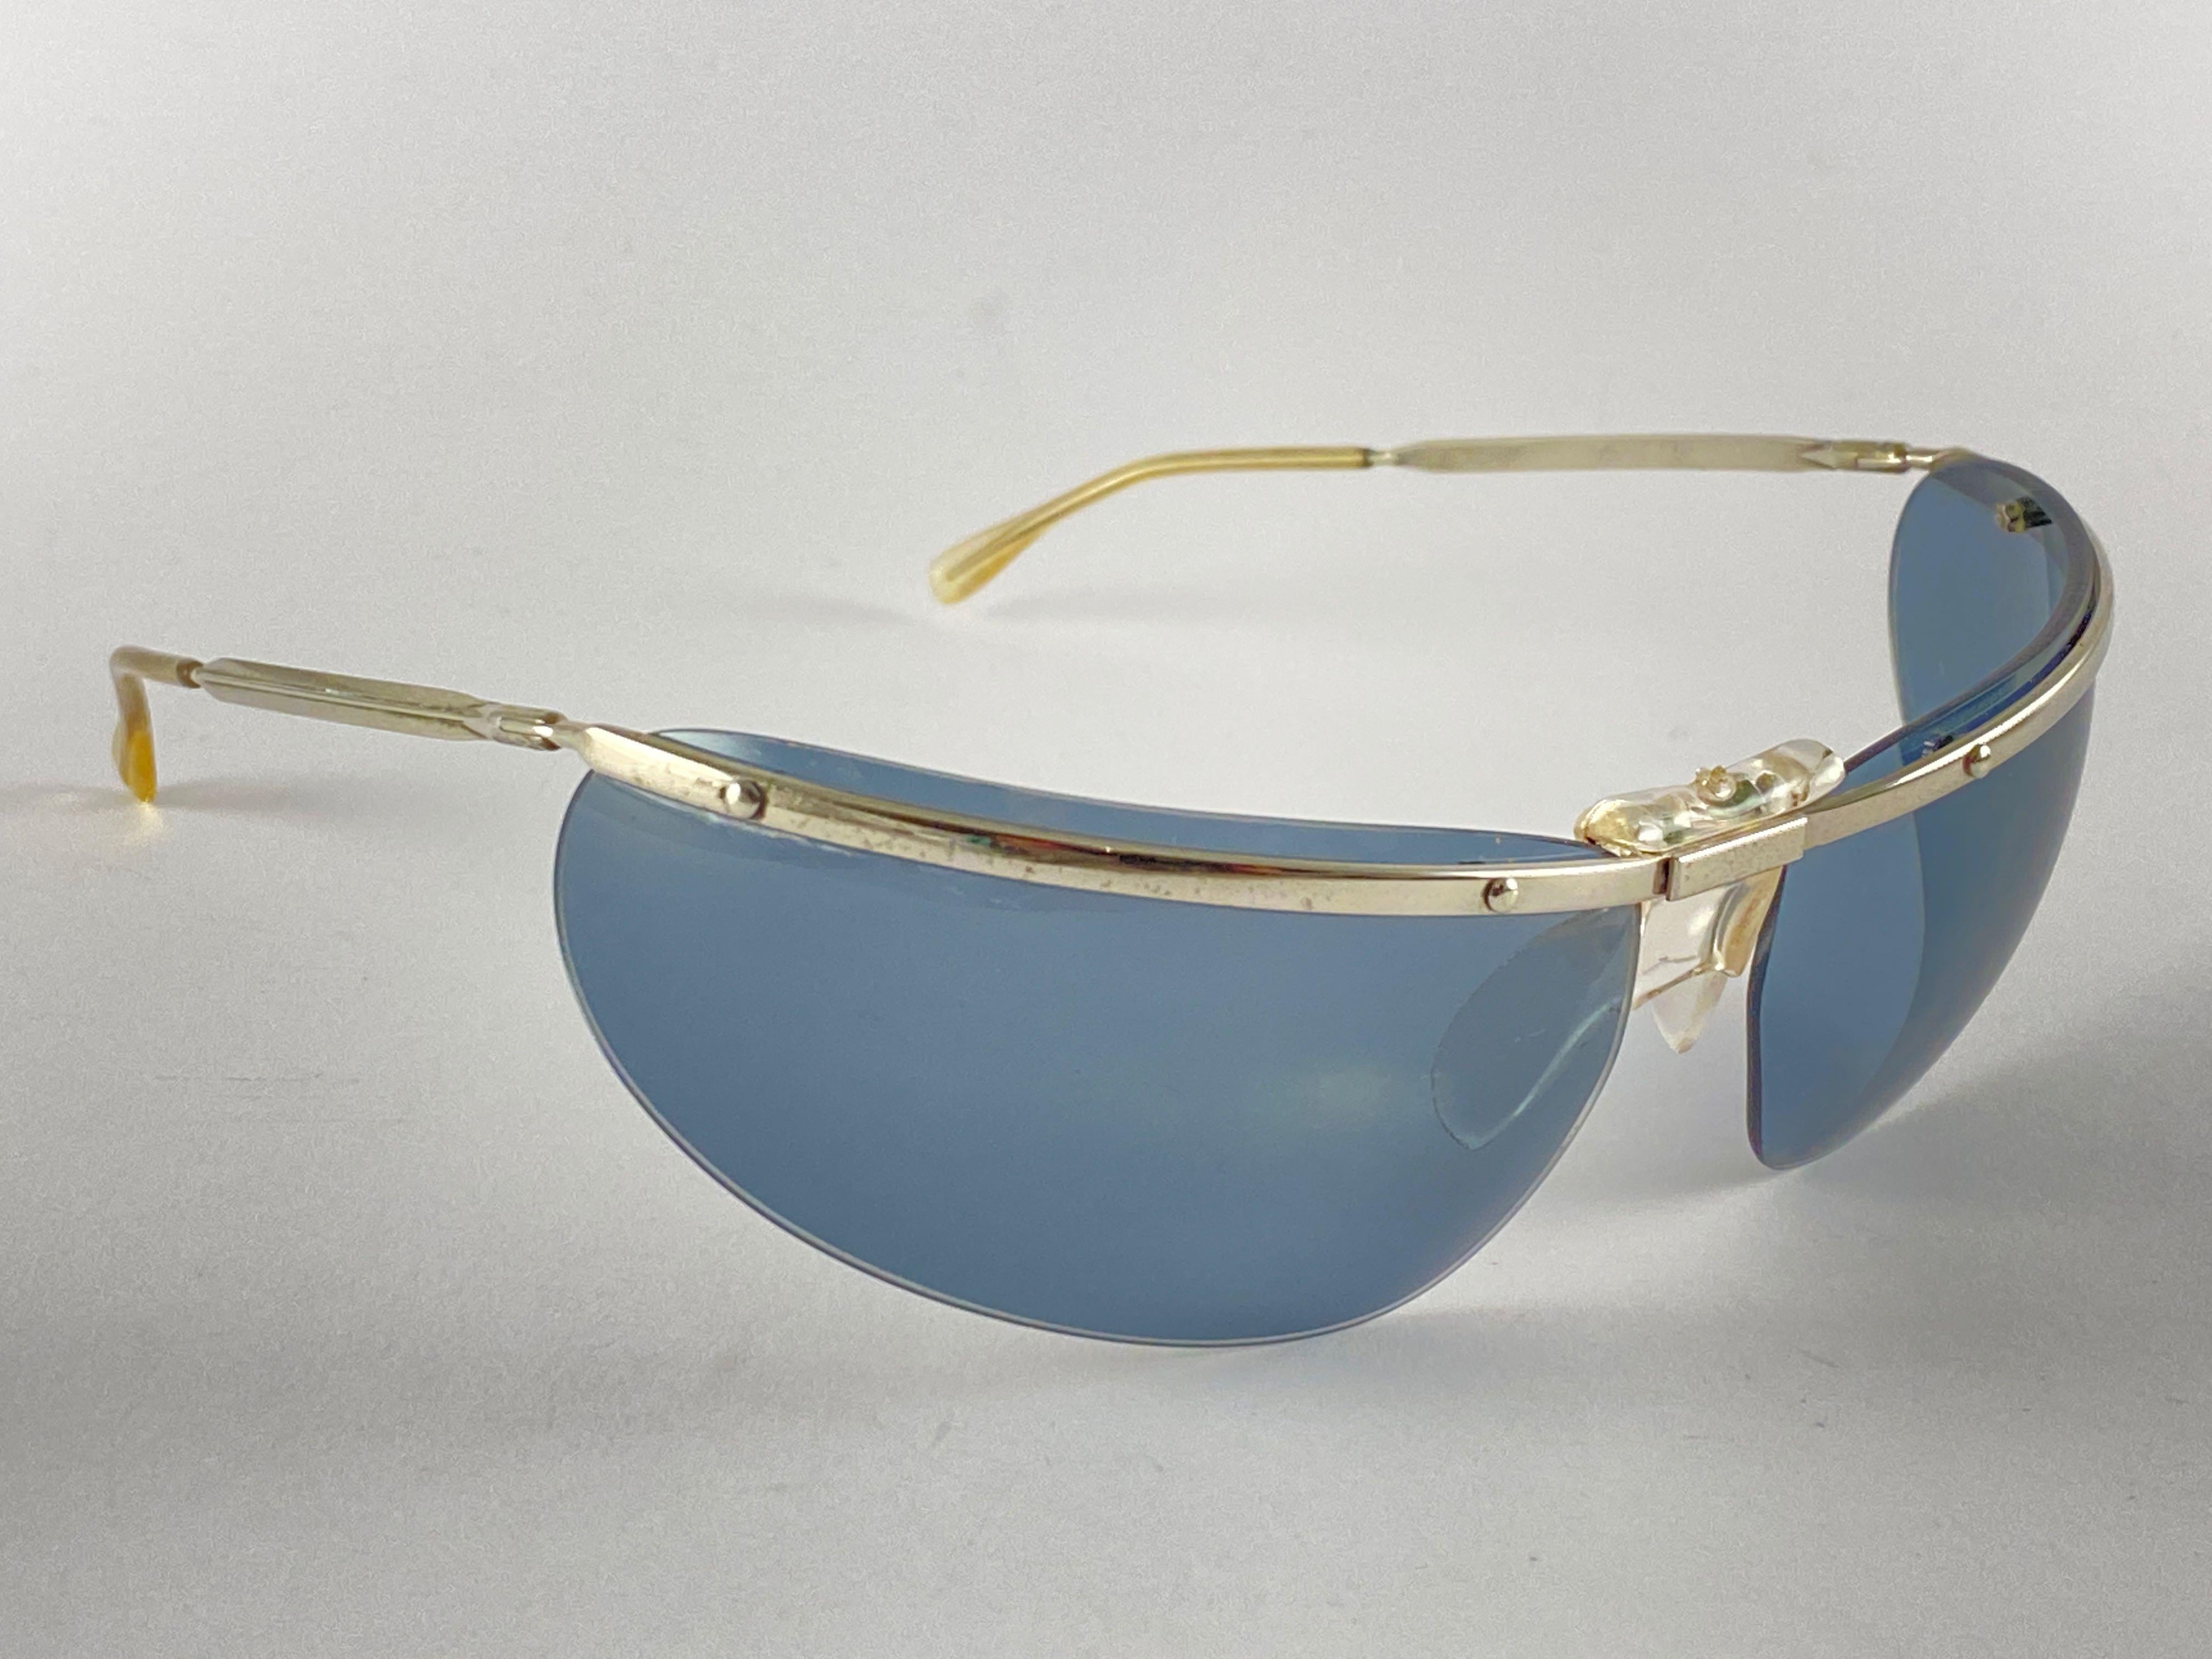 renauld sunglasses vintage